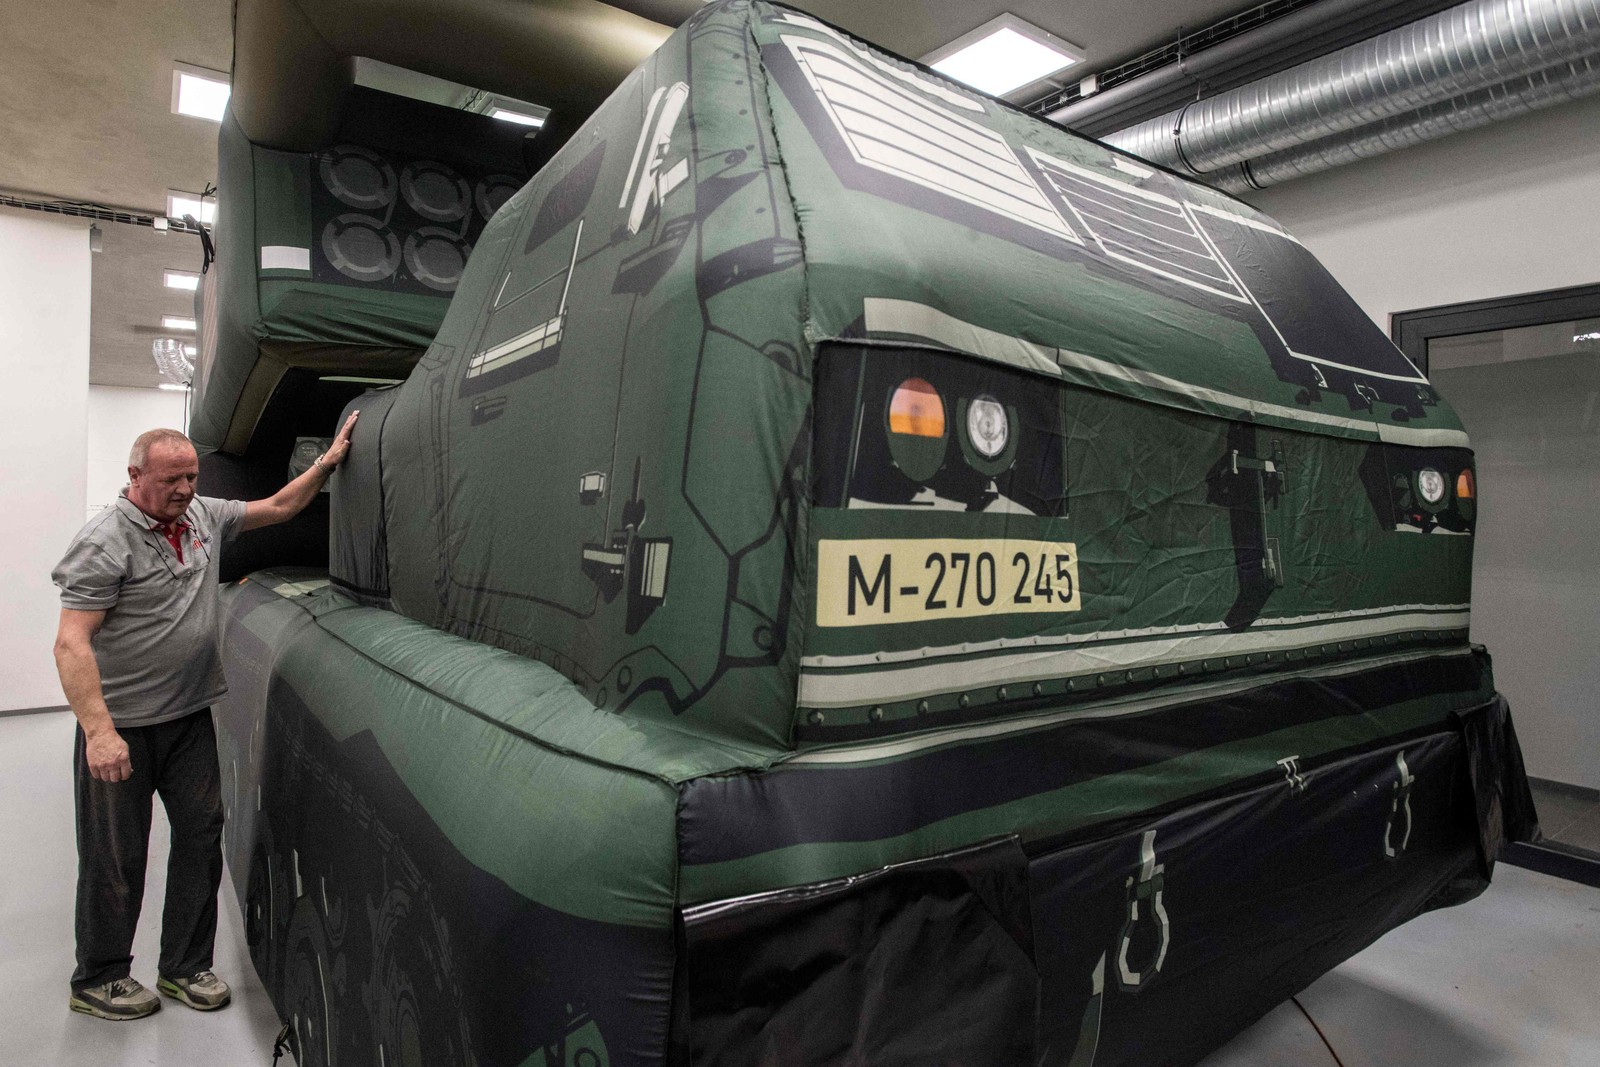 Empresa tcheca que produz armamentos infláveis disse percebeu aumento na demanda desde o início da invasão russa da Ucrânia — Foto: Michal Cizek / AFP